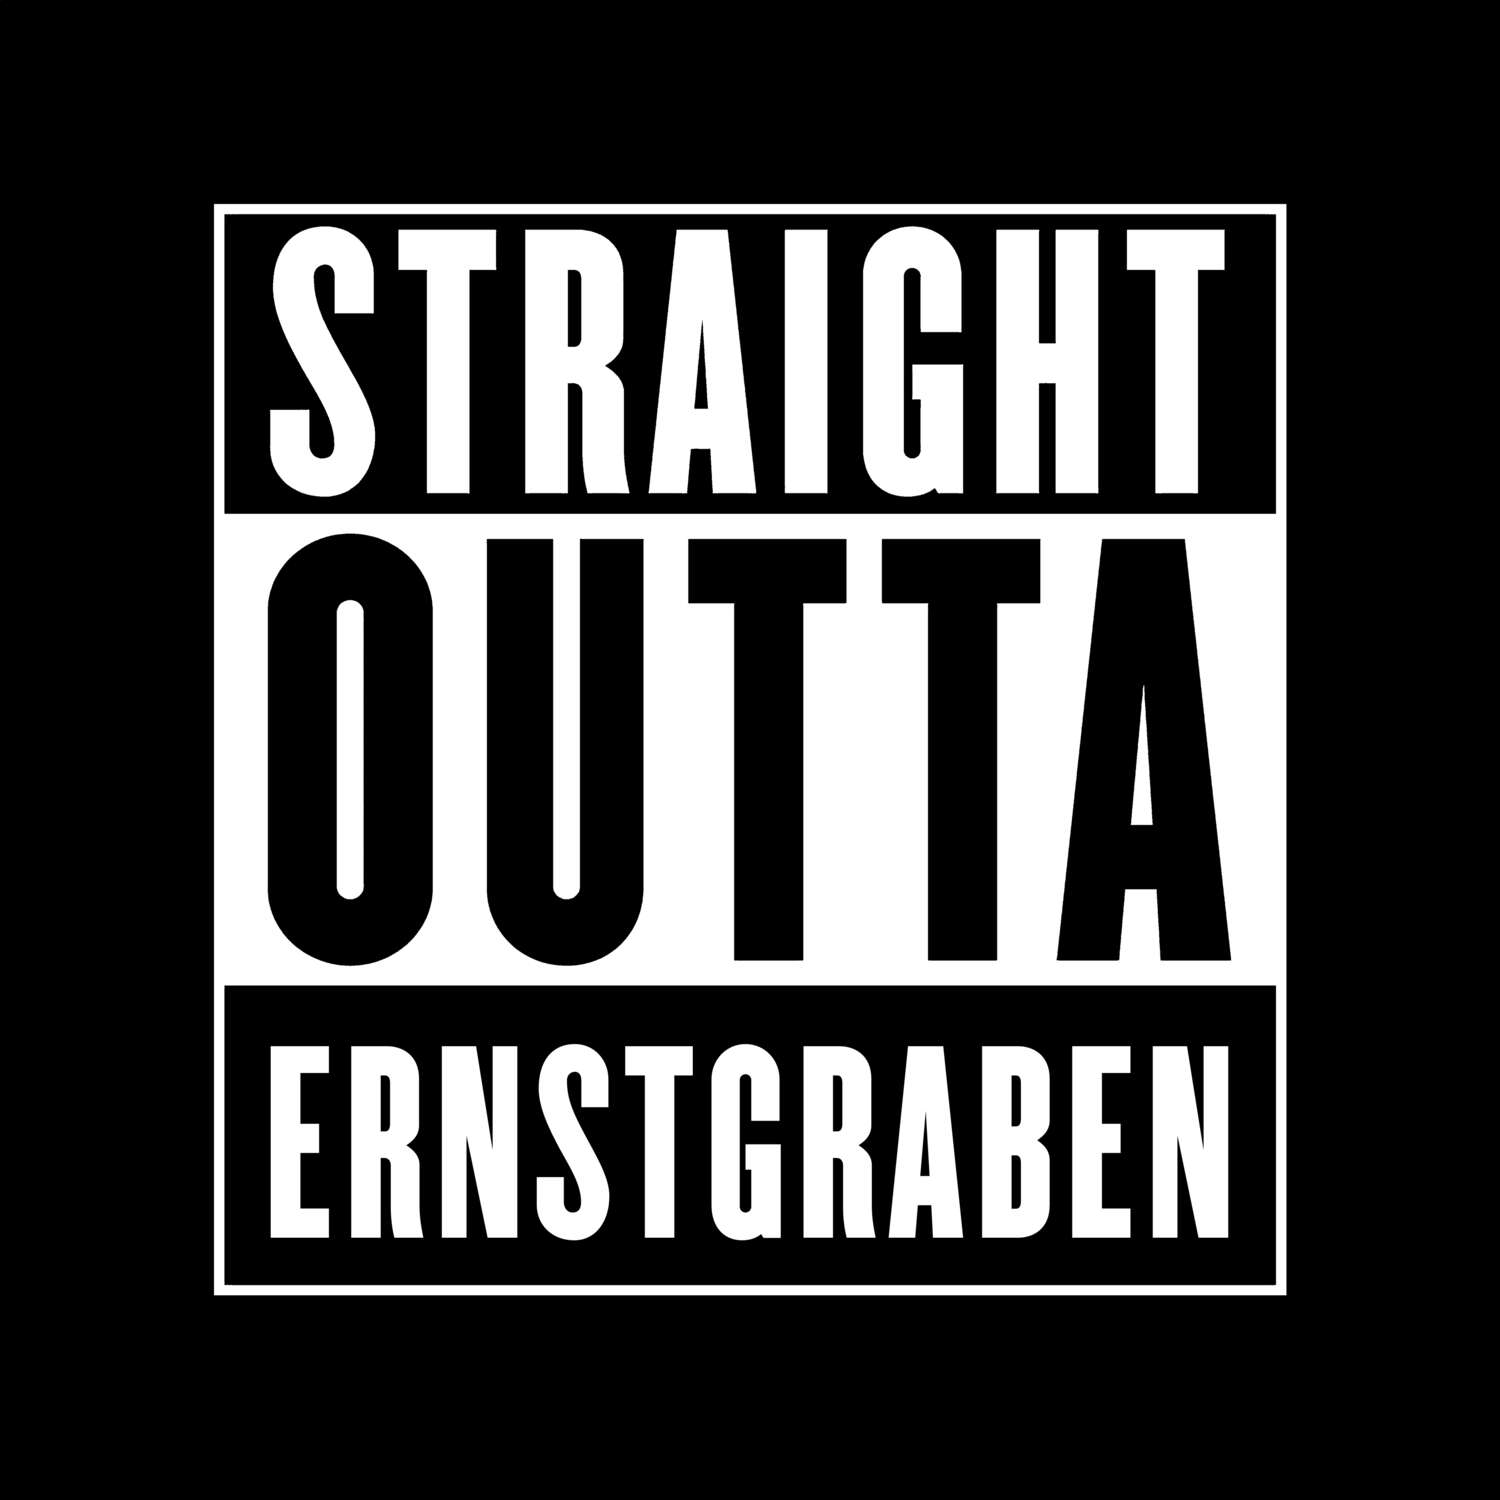 Ernstgraben T-Shirt »Straight Outta«